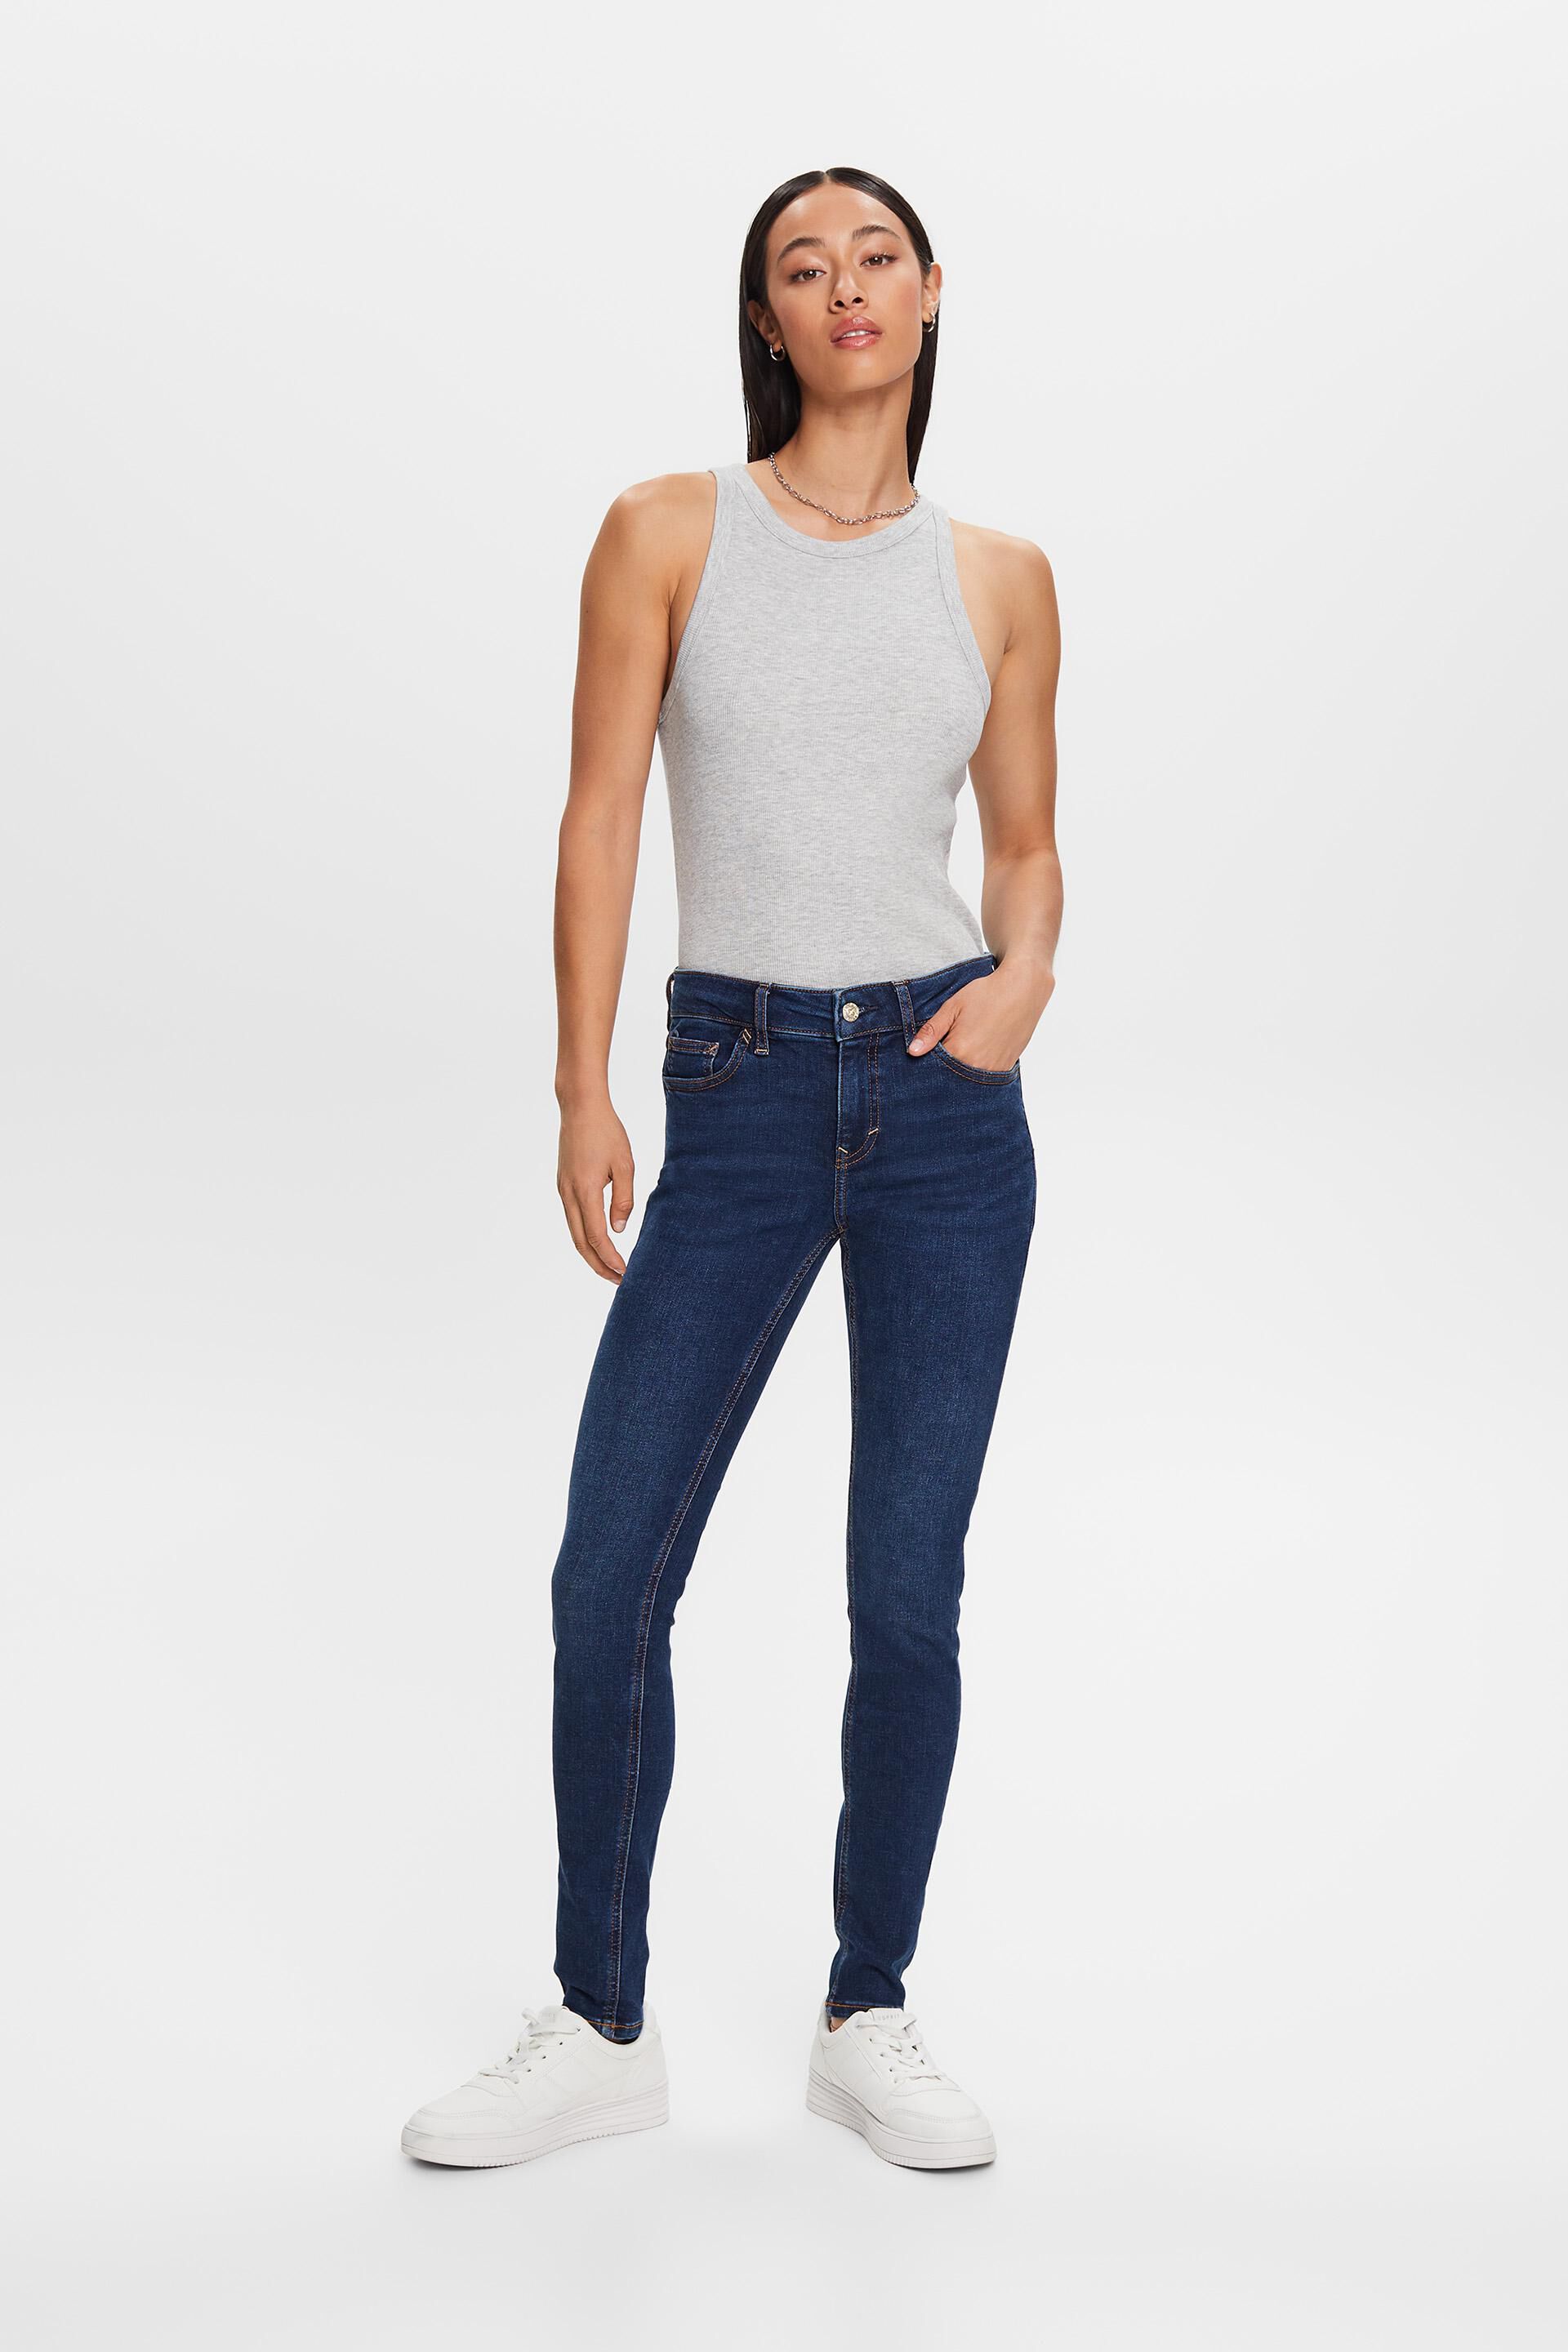 Esprit Damen Skinny-Jeans mit Bund mittelhohem